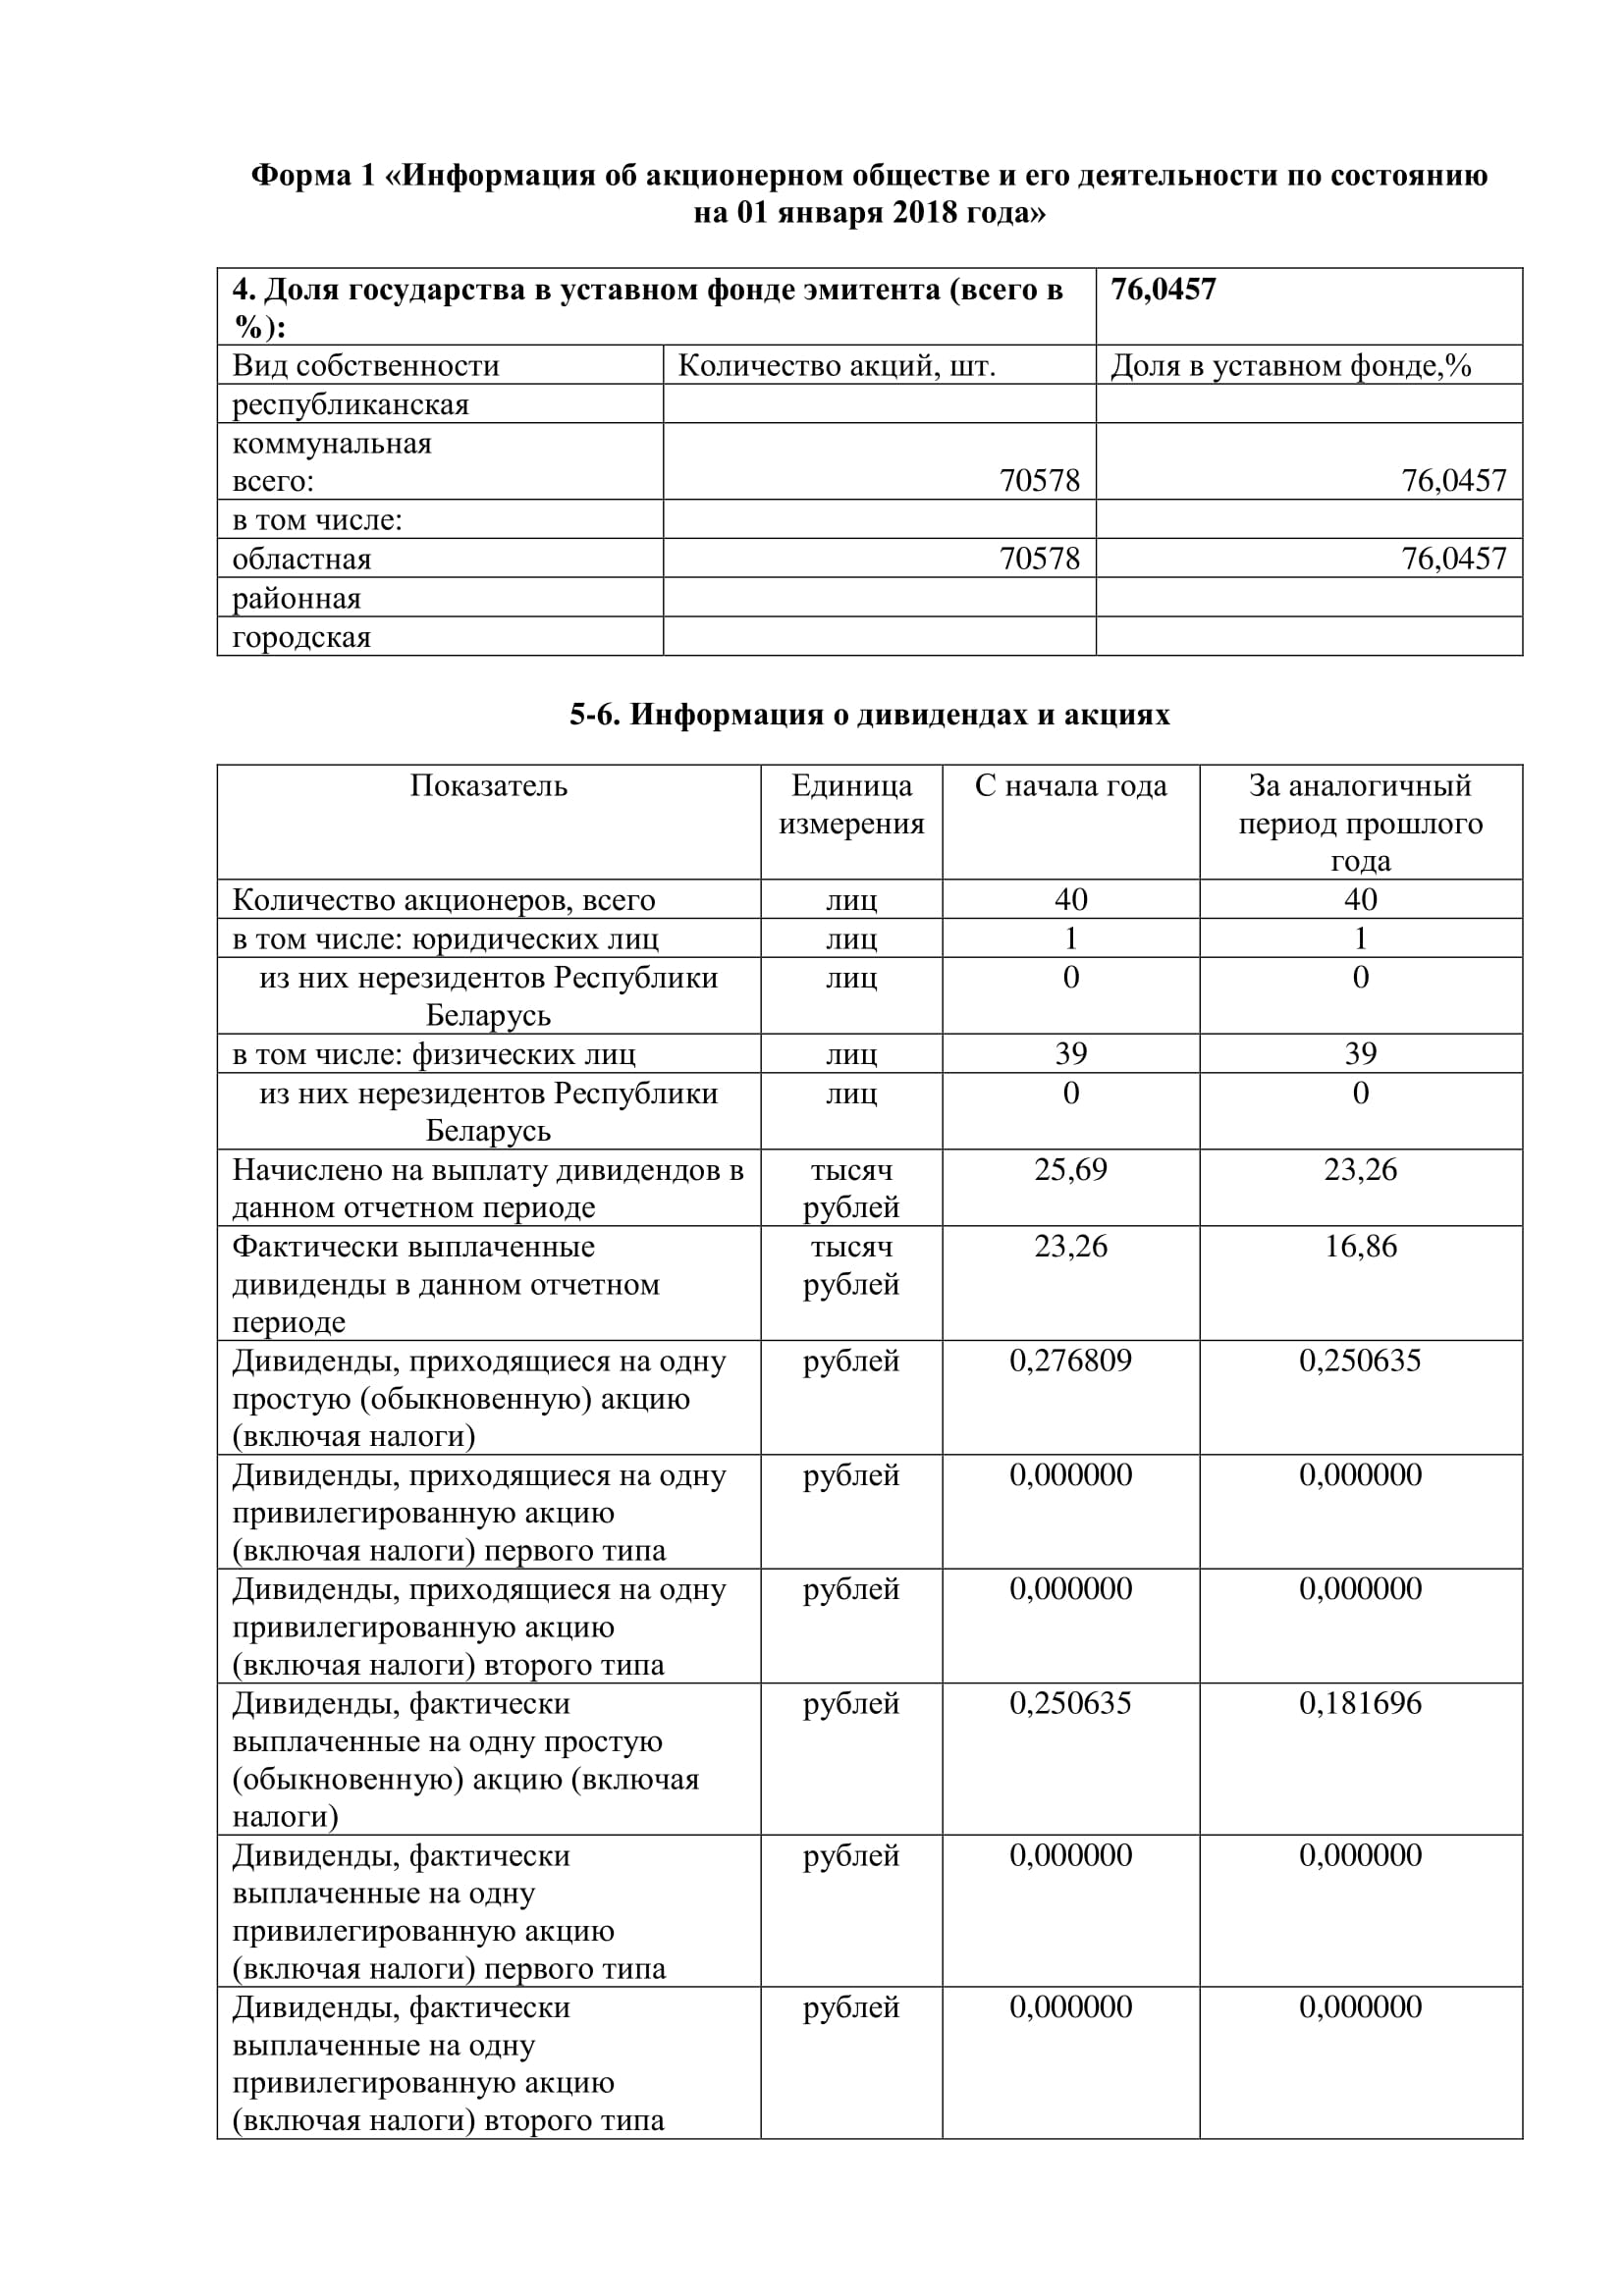 ОАО Торговый дом Сож - Годовой отчет эмитента -2017